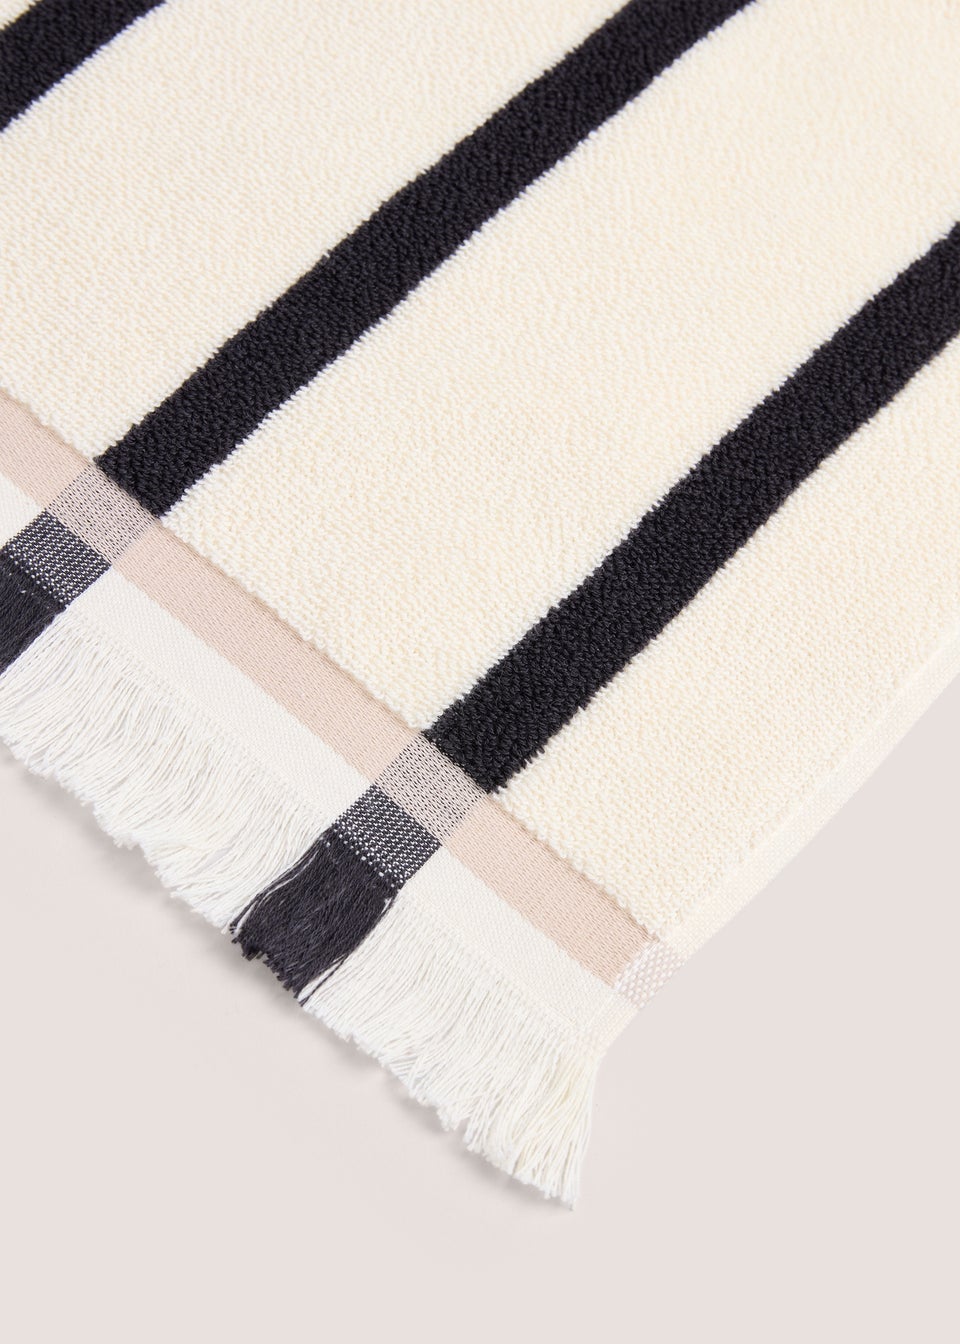 100% Cotton Natural Stripe Fringe Towel